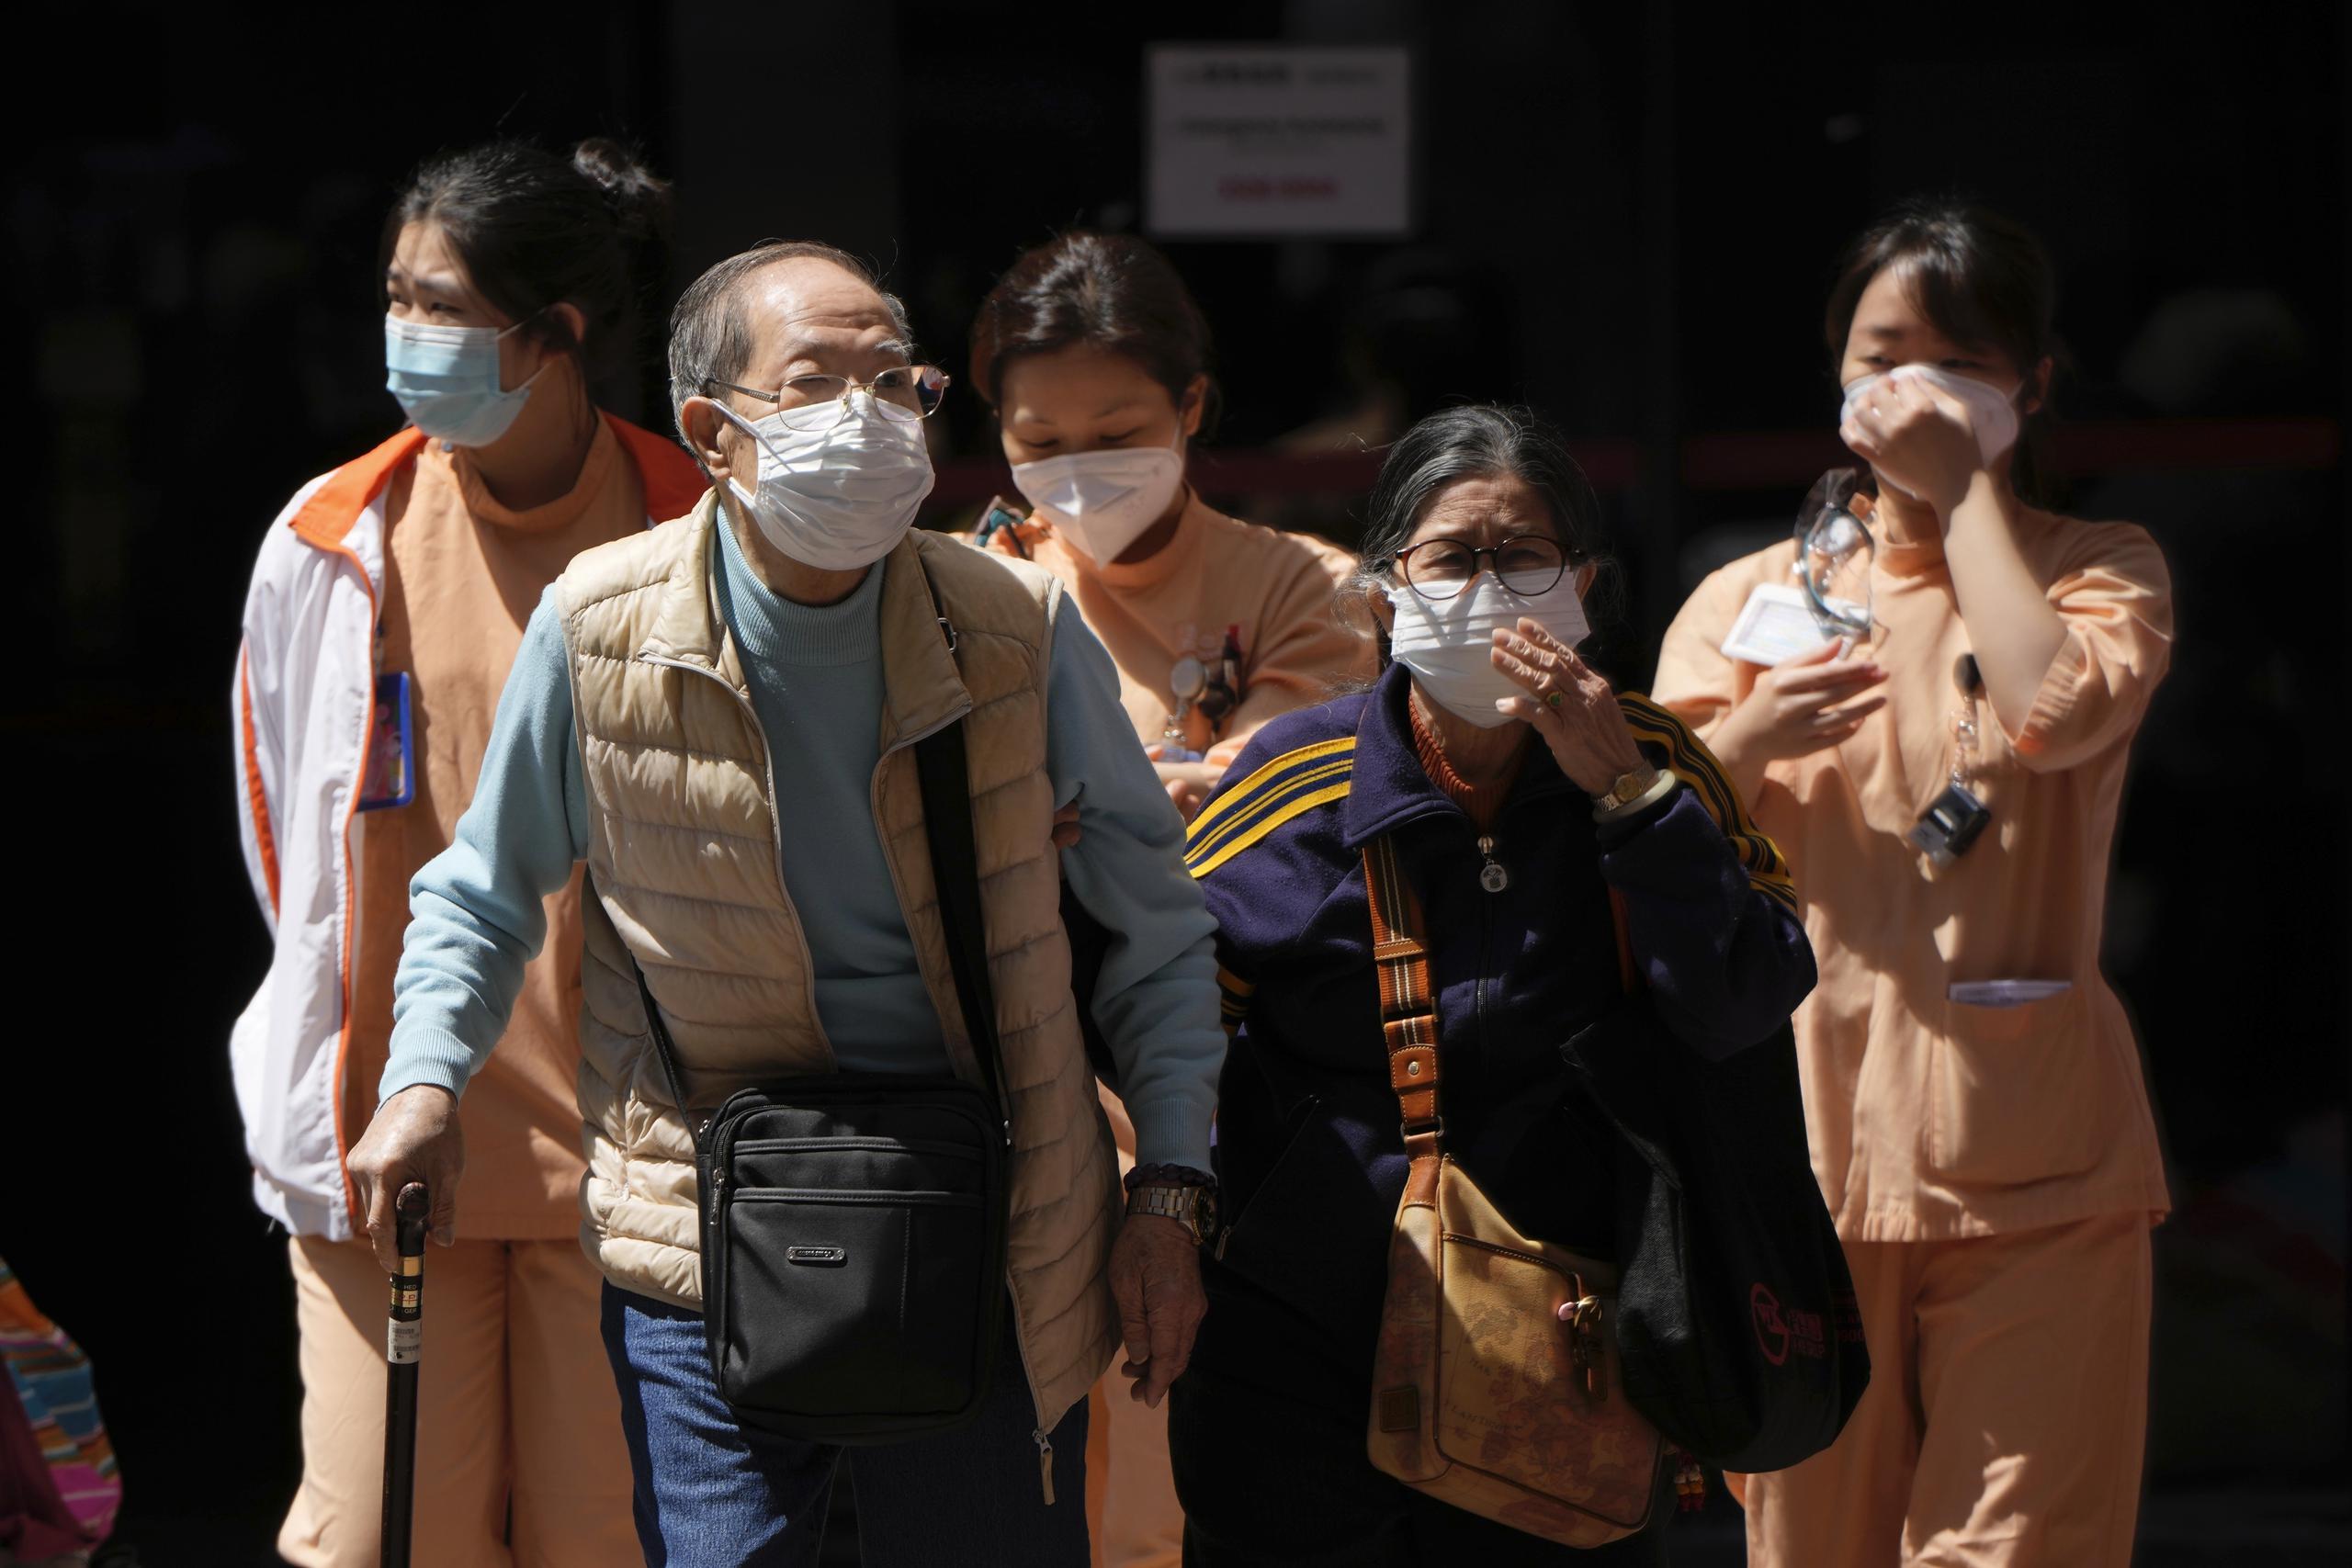 En la última semana, Hong Kong ha sido uno de los pocos países en reportar un panorama negativo durante la pandemia del COVID-19, tras reportar alrededor de 150 decesos diarios, la peor tasa de mortalidad por millón de habitantes.